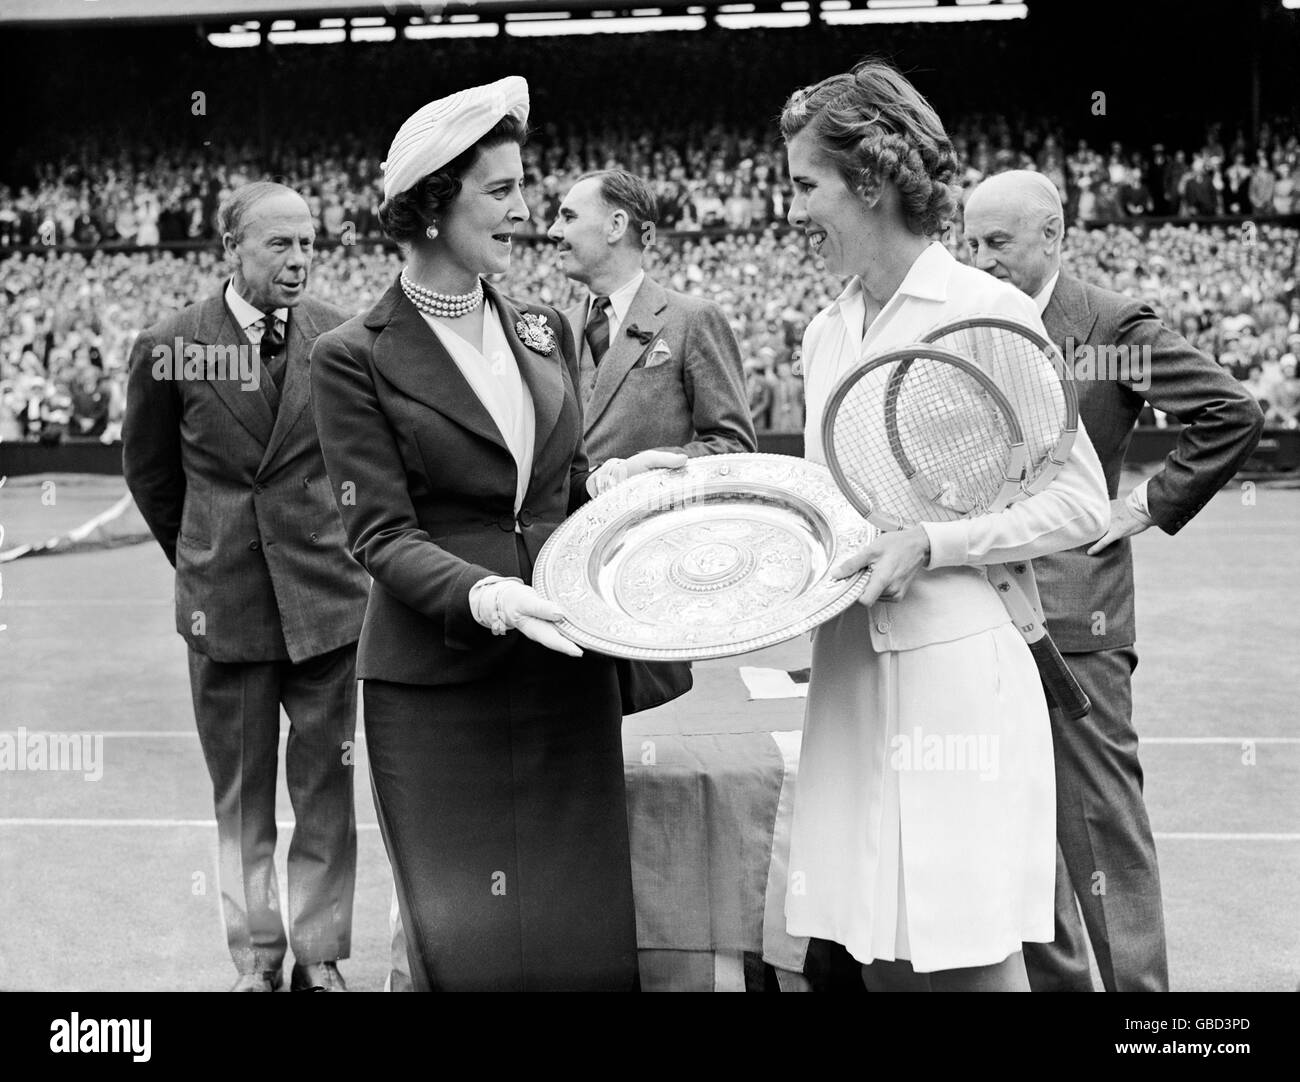 Tenis - Campeonatos de Wimbledon - Singles de Damas - Final - Doris Hart v Shirley Fry. HRH La Duquesa de Kent (l) presenta el trofeo de solteros de mujeres a Doris Hart (r) después de su victoria 6-1, 6-0 Foto de stock